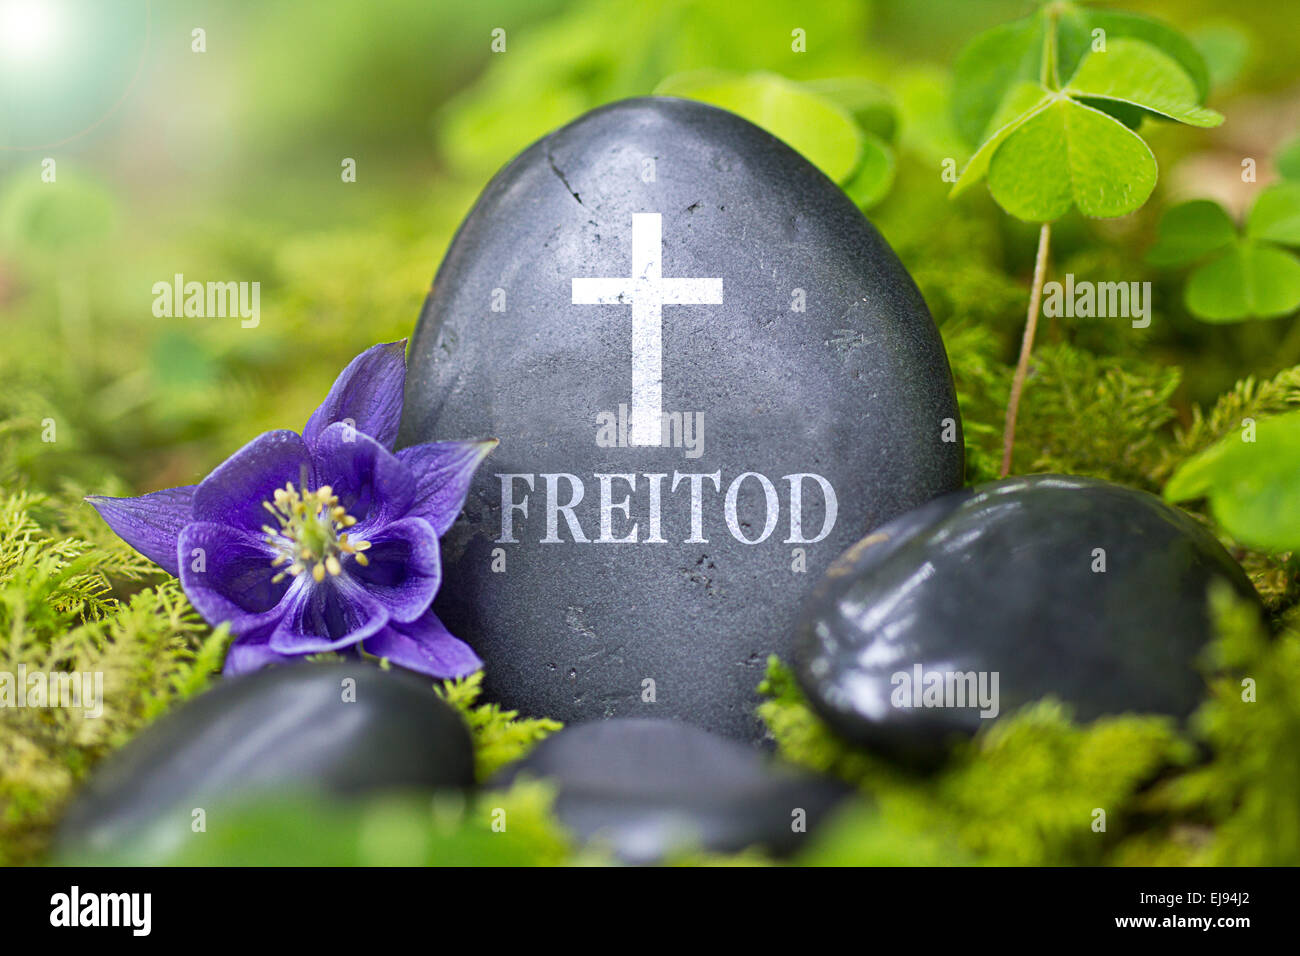 Pietra Nera con la parola "Freitod" Foto Stock